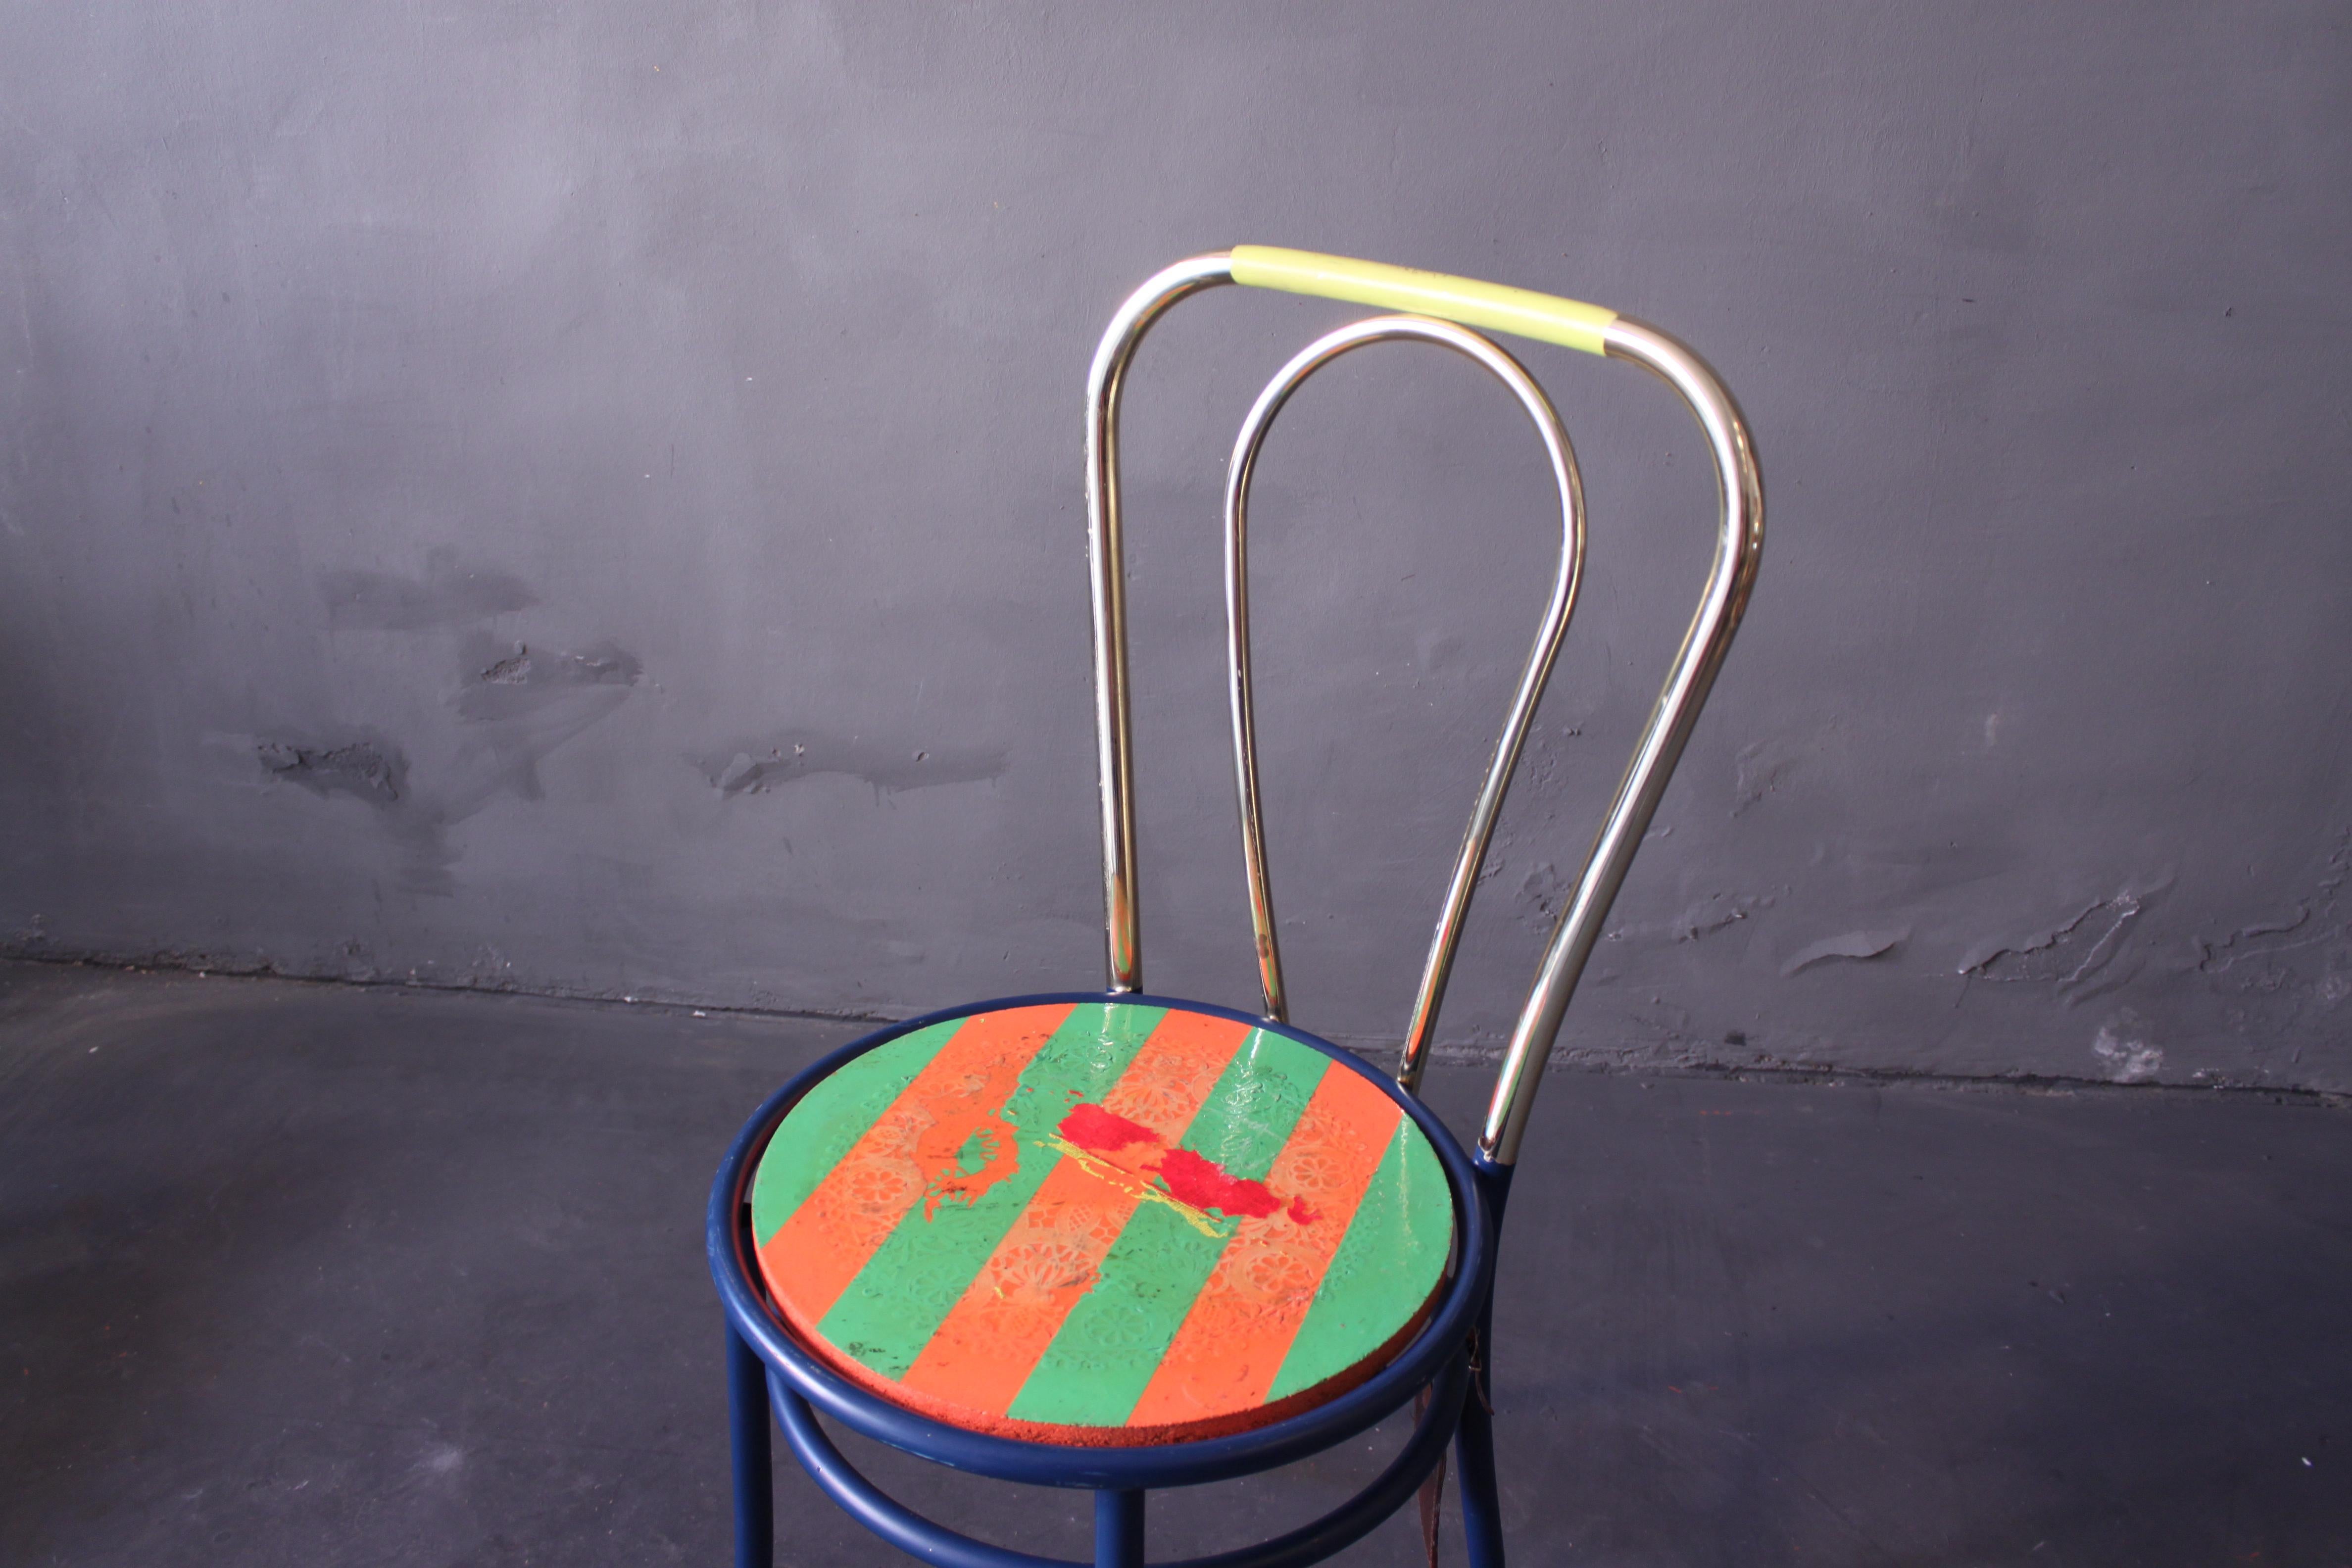 Neuauflage eines klassischen Thonet-Stuhls aus den 1980er Jahren, Stahl, verchromt, Sitzfläche kunstvoll lackiert im Stil des Minimalismus.
Durch meine Arbeit verwandle ich jeden Stuhl in ein einzigartiges und individuelles Objekt. Stühle, die